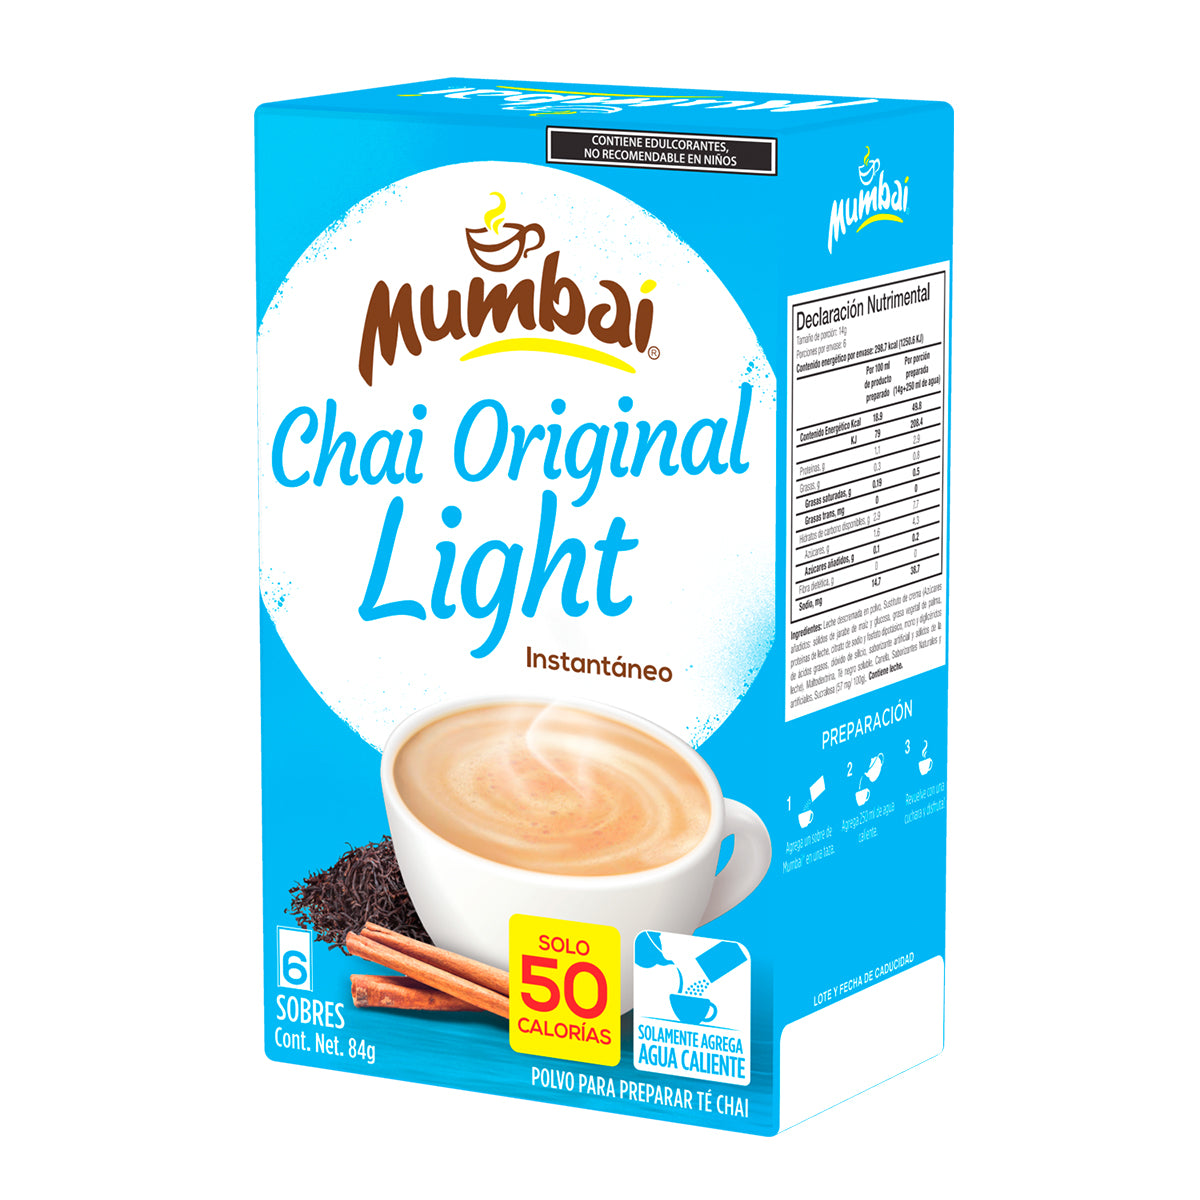 Mumbai Té Chai Light Original 6 sobres